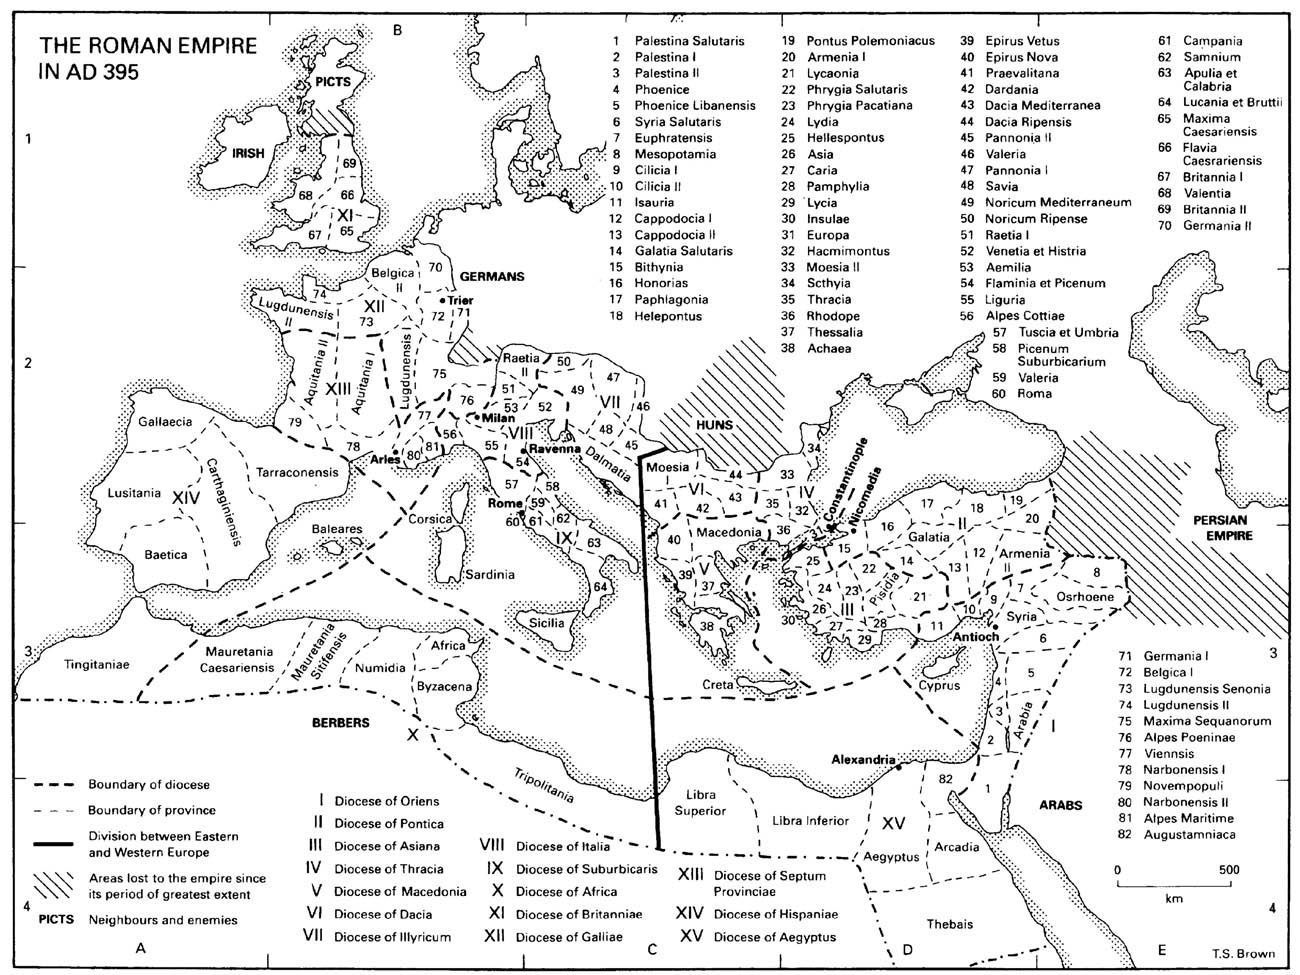 1. The Roman Empire in AD 395